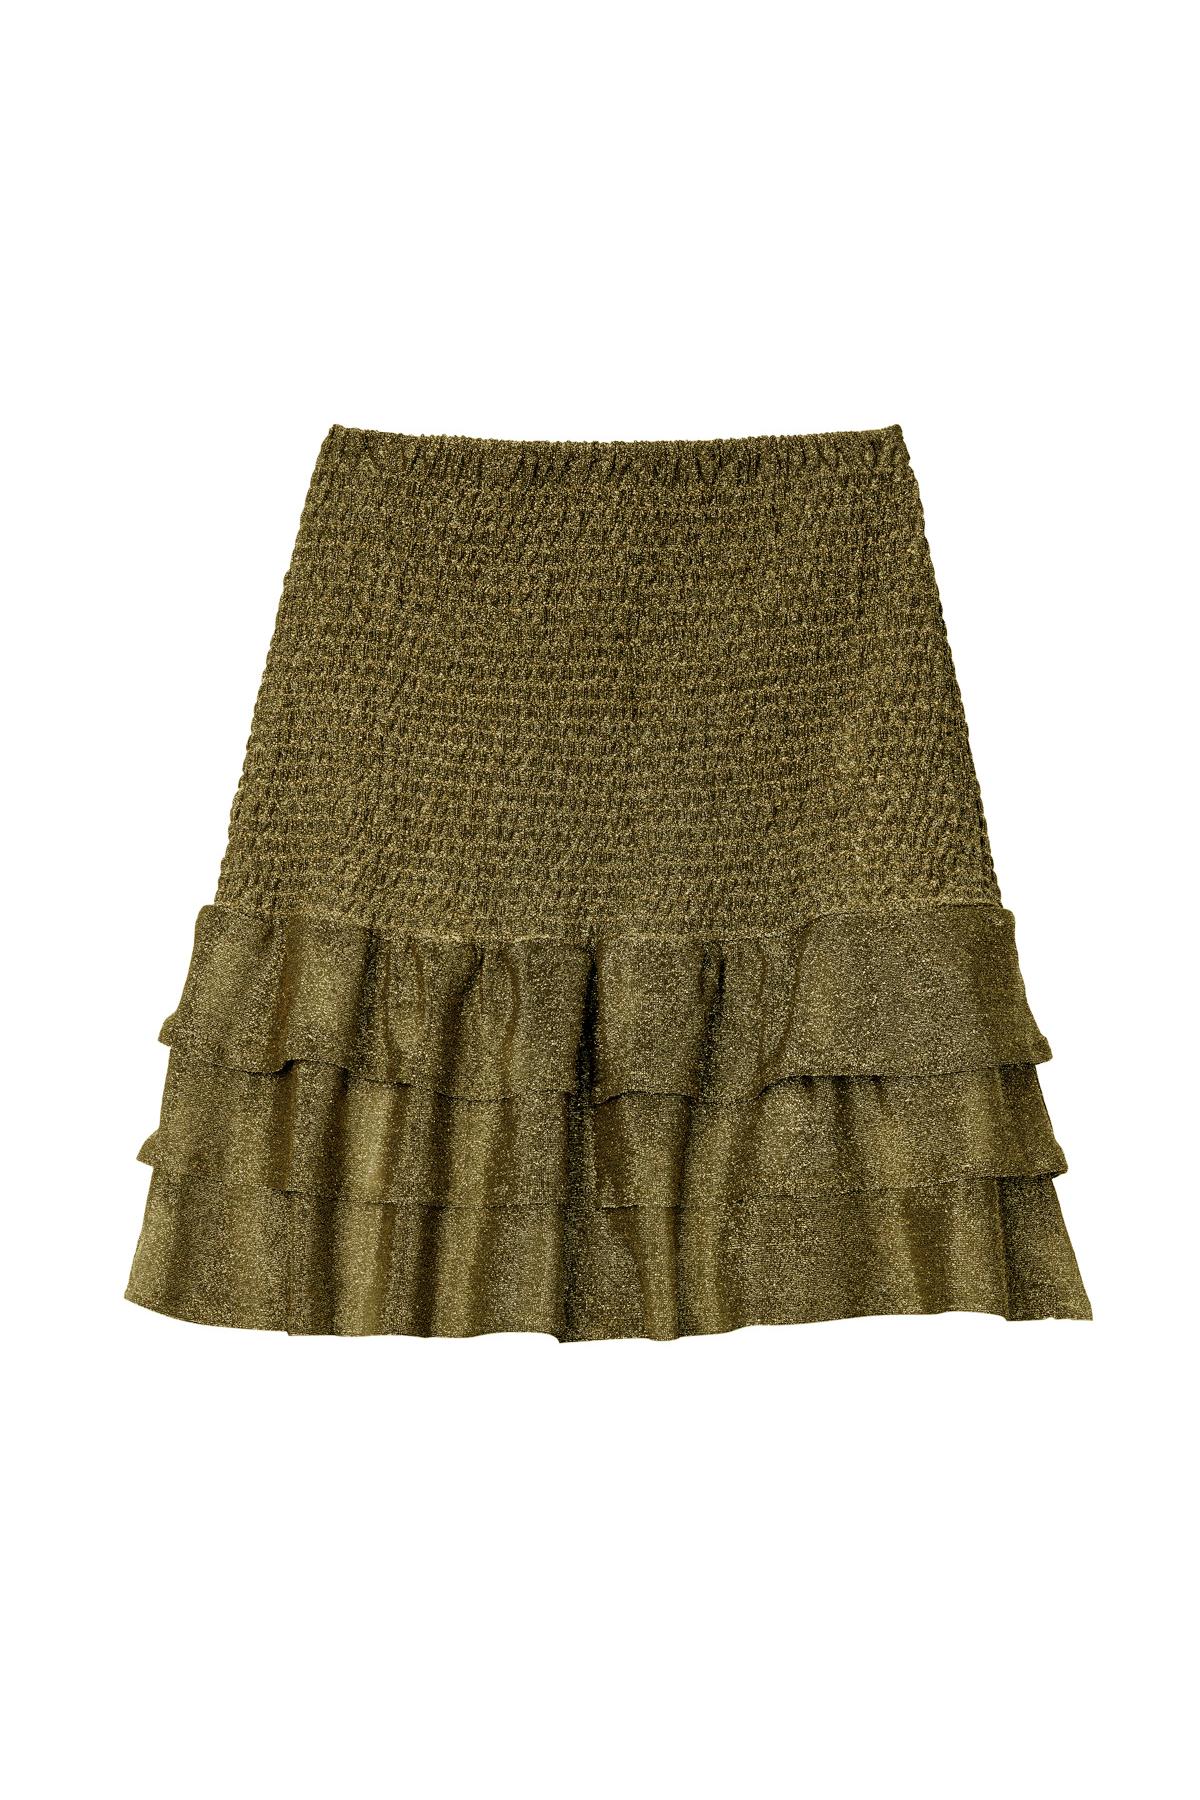 Skirt Festive Gold L h5 